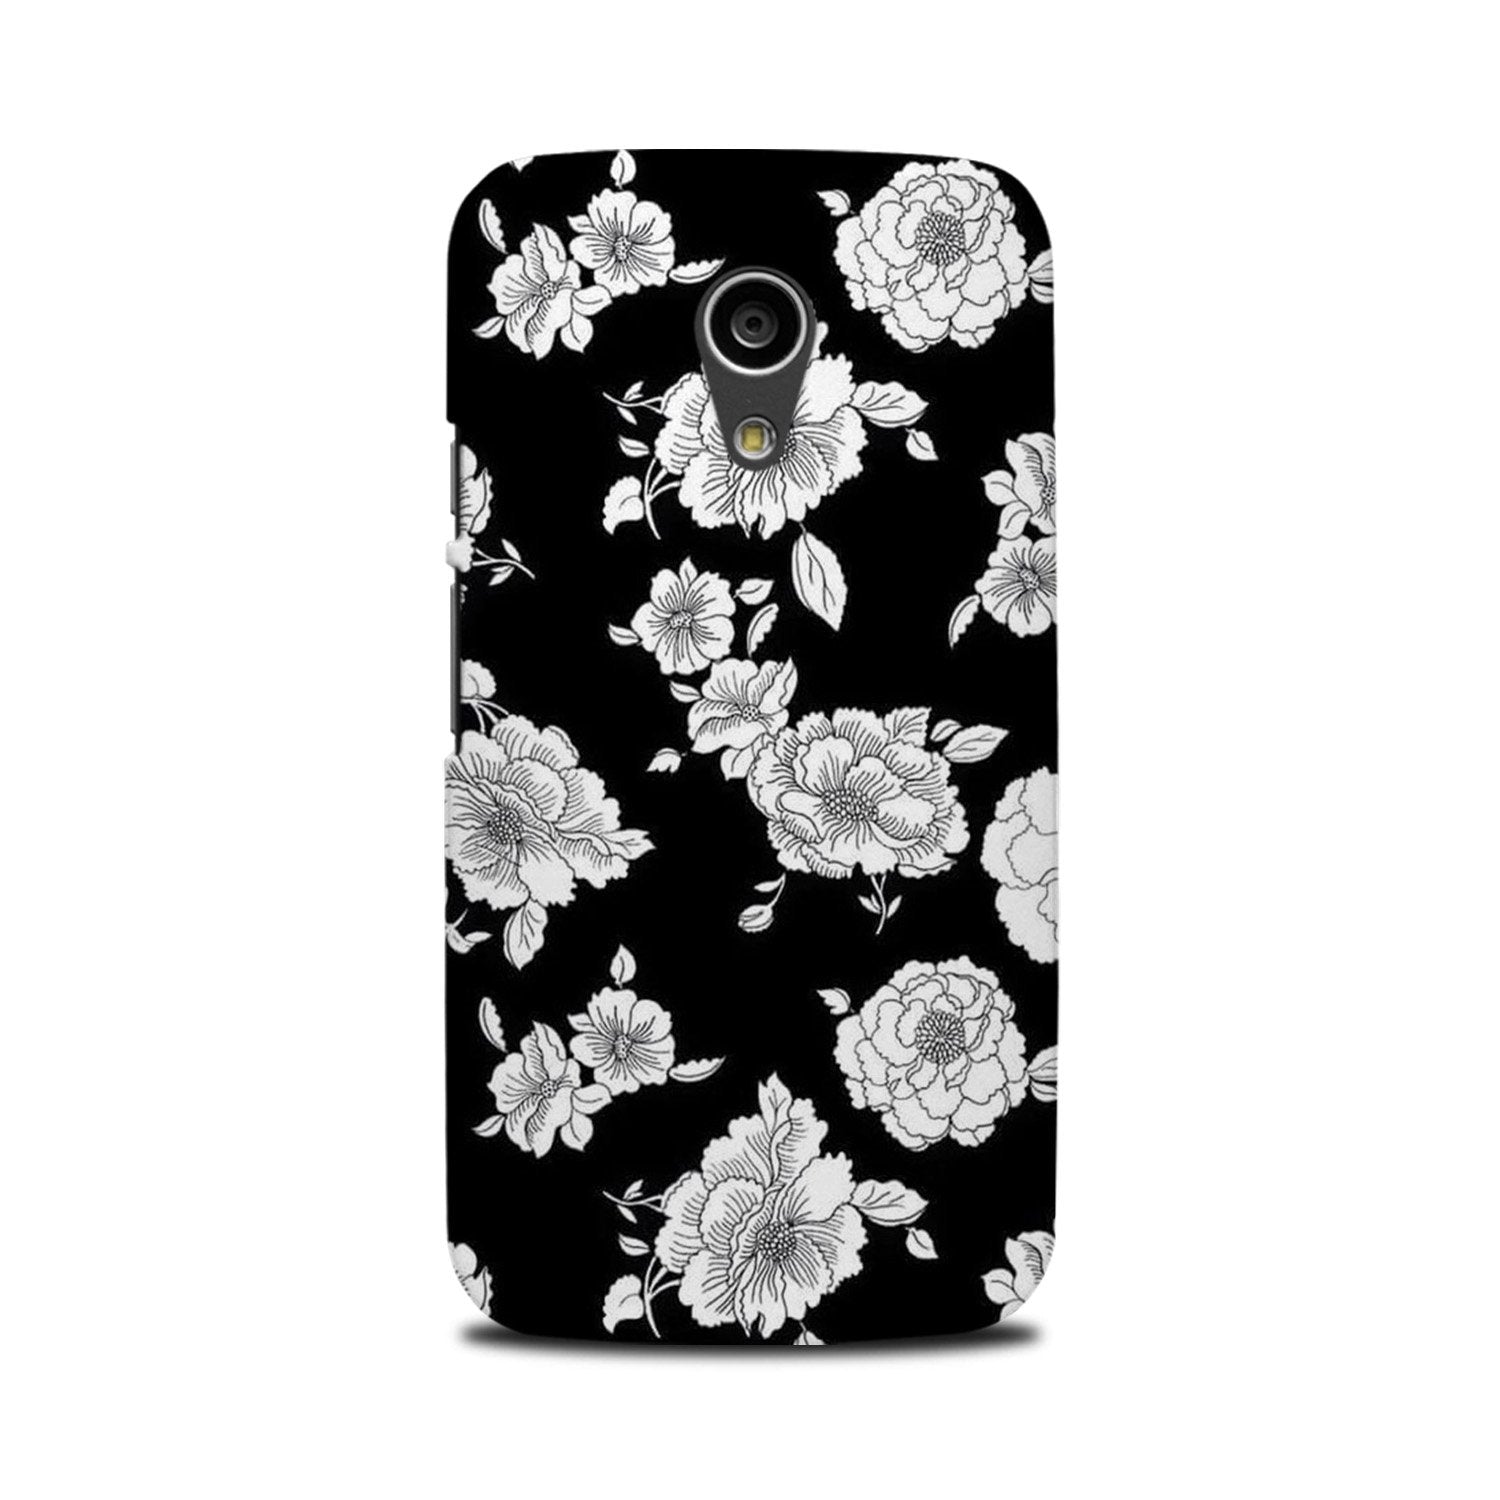 White flowers Black Background Case for Moto G2